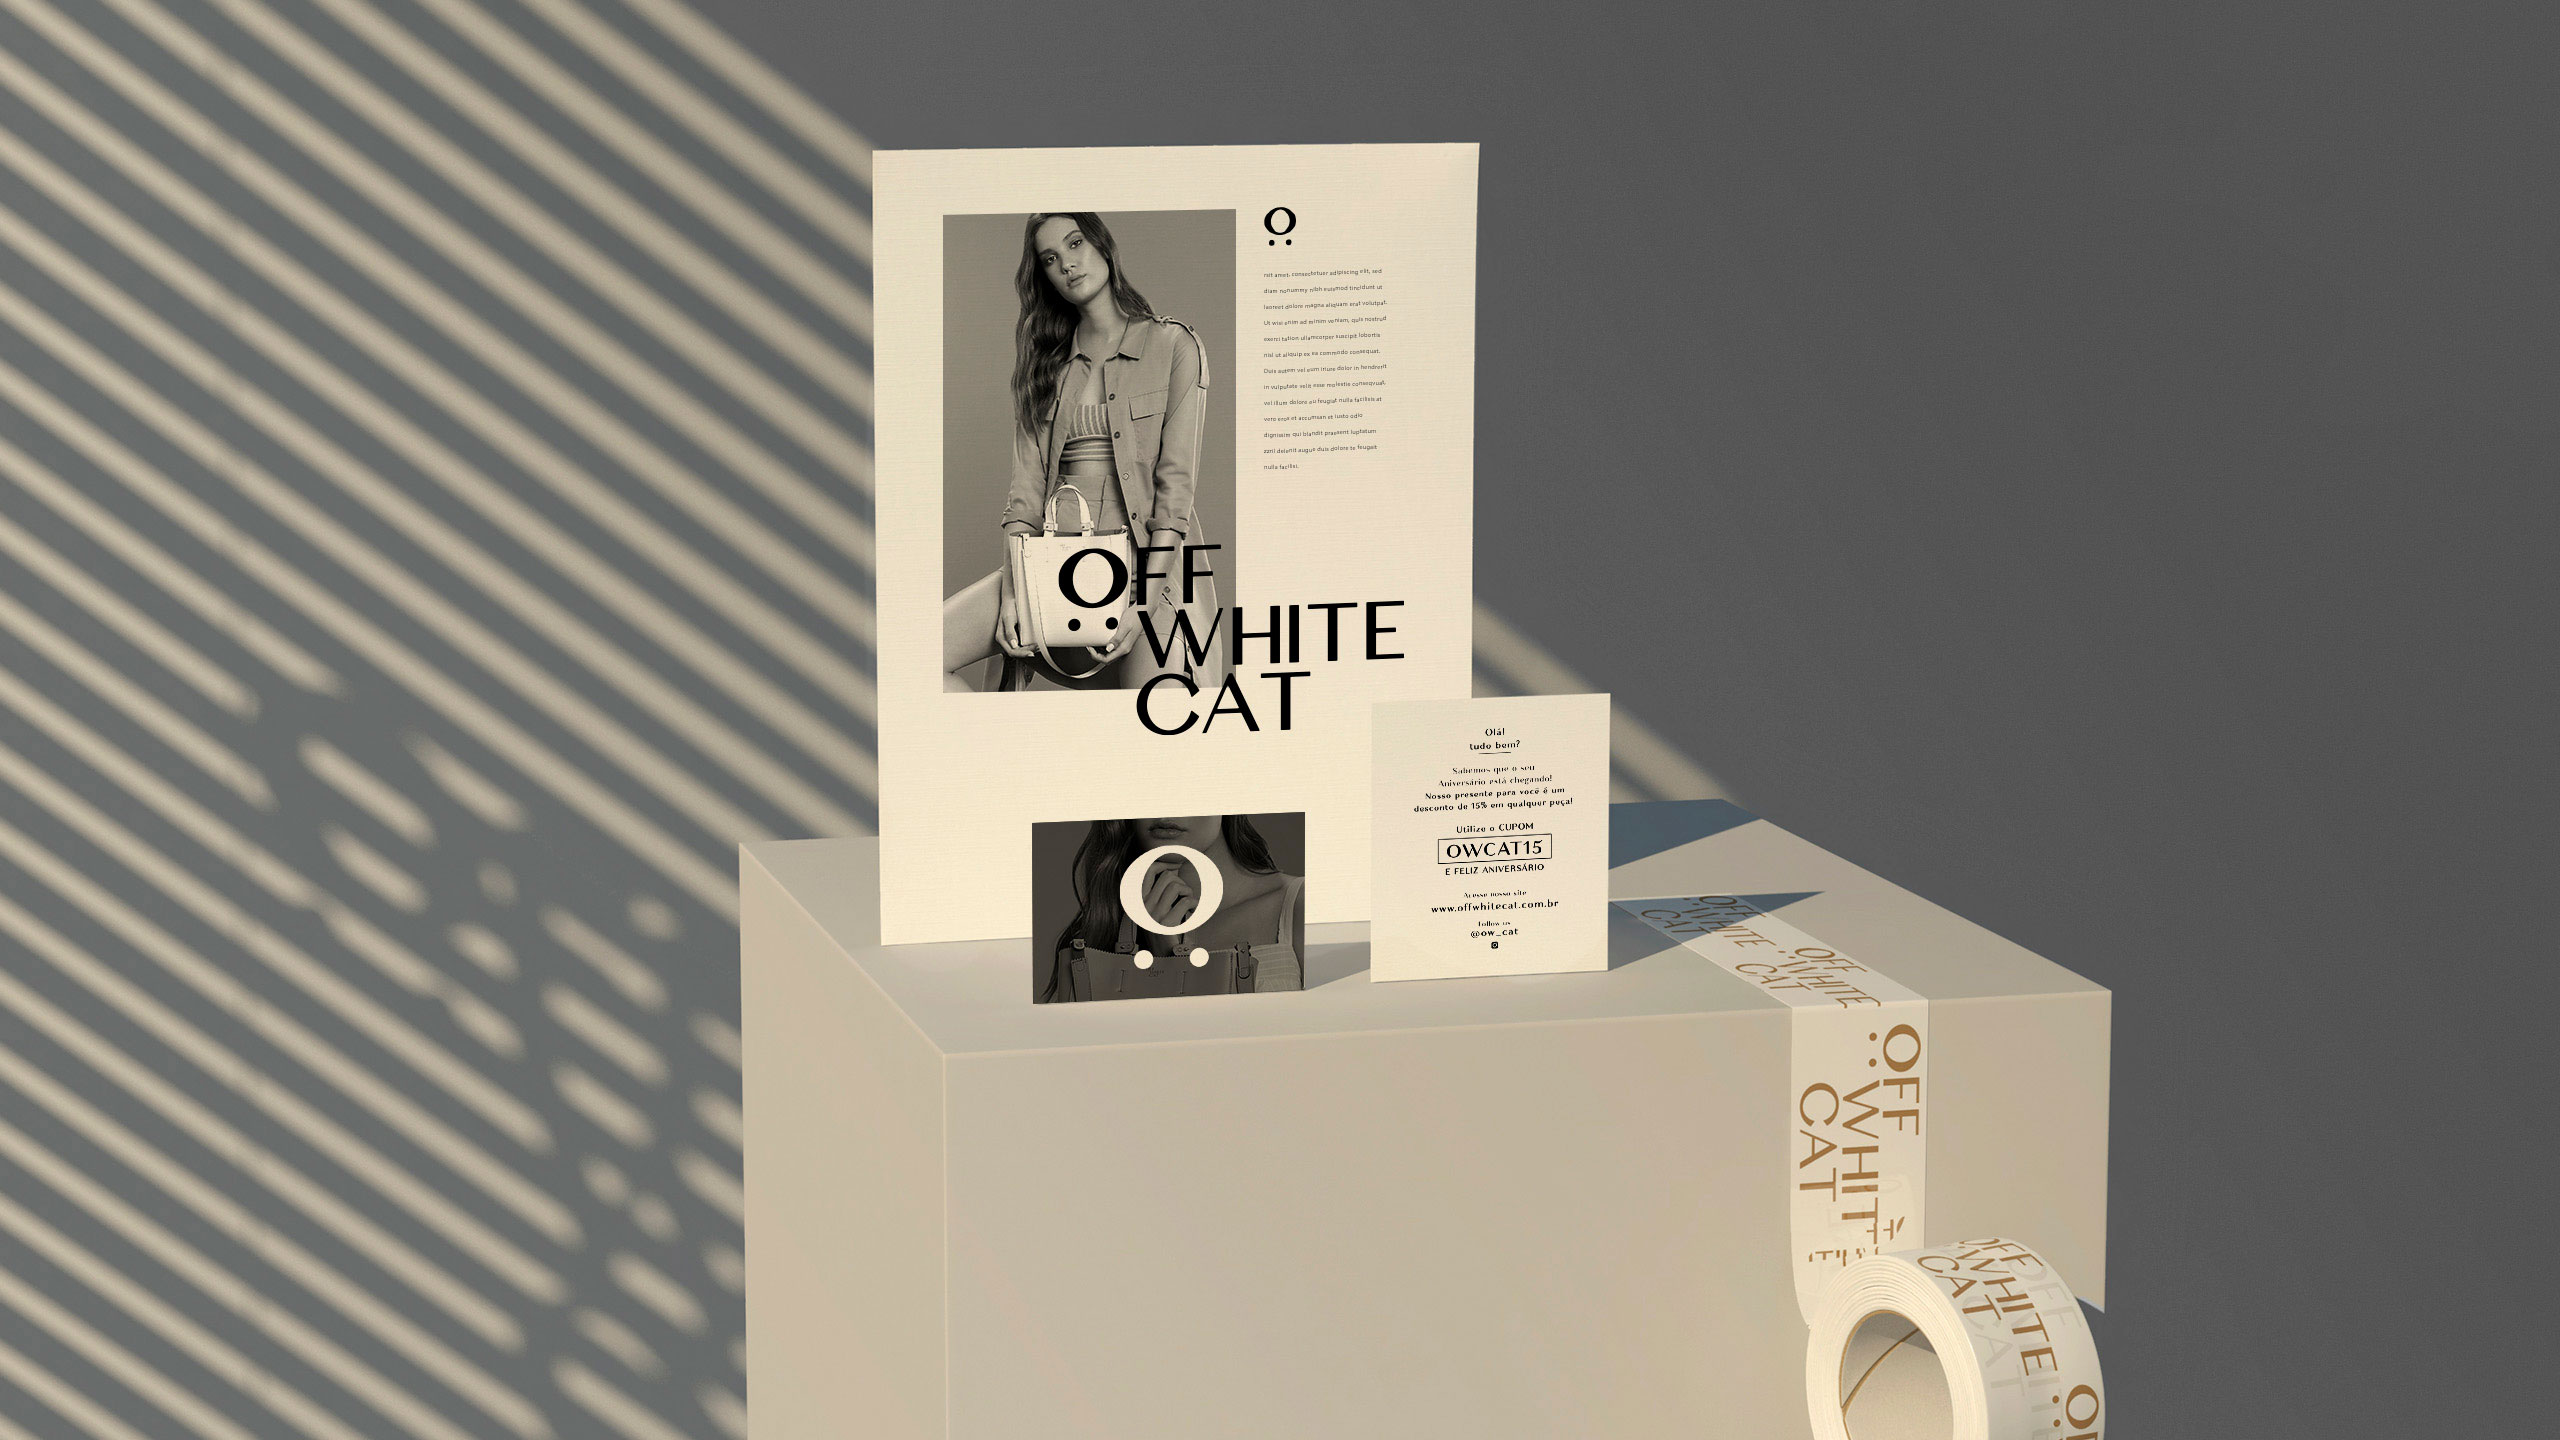 estudio de design carpintaria para Off White Cat imagem campanha